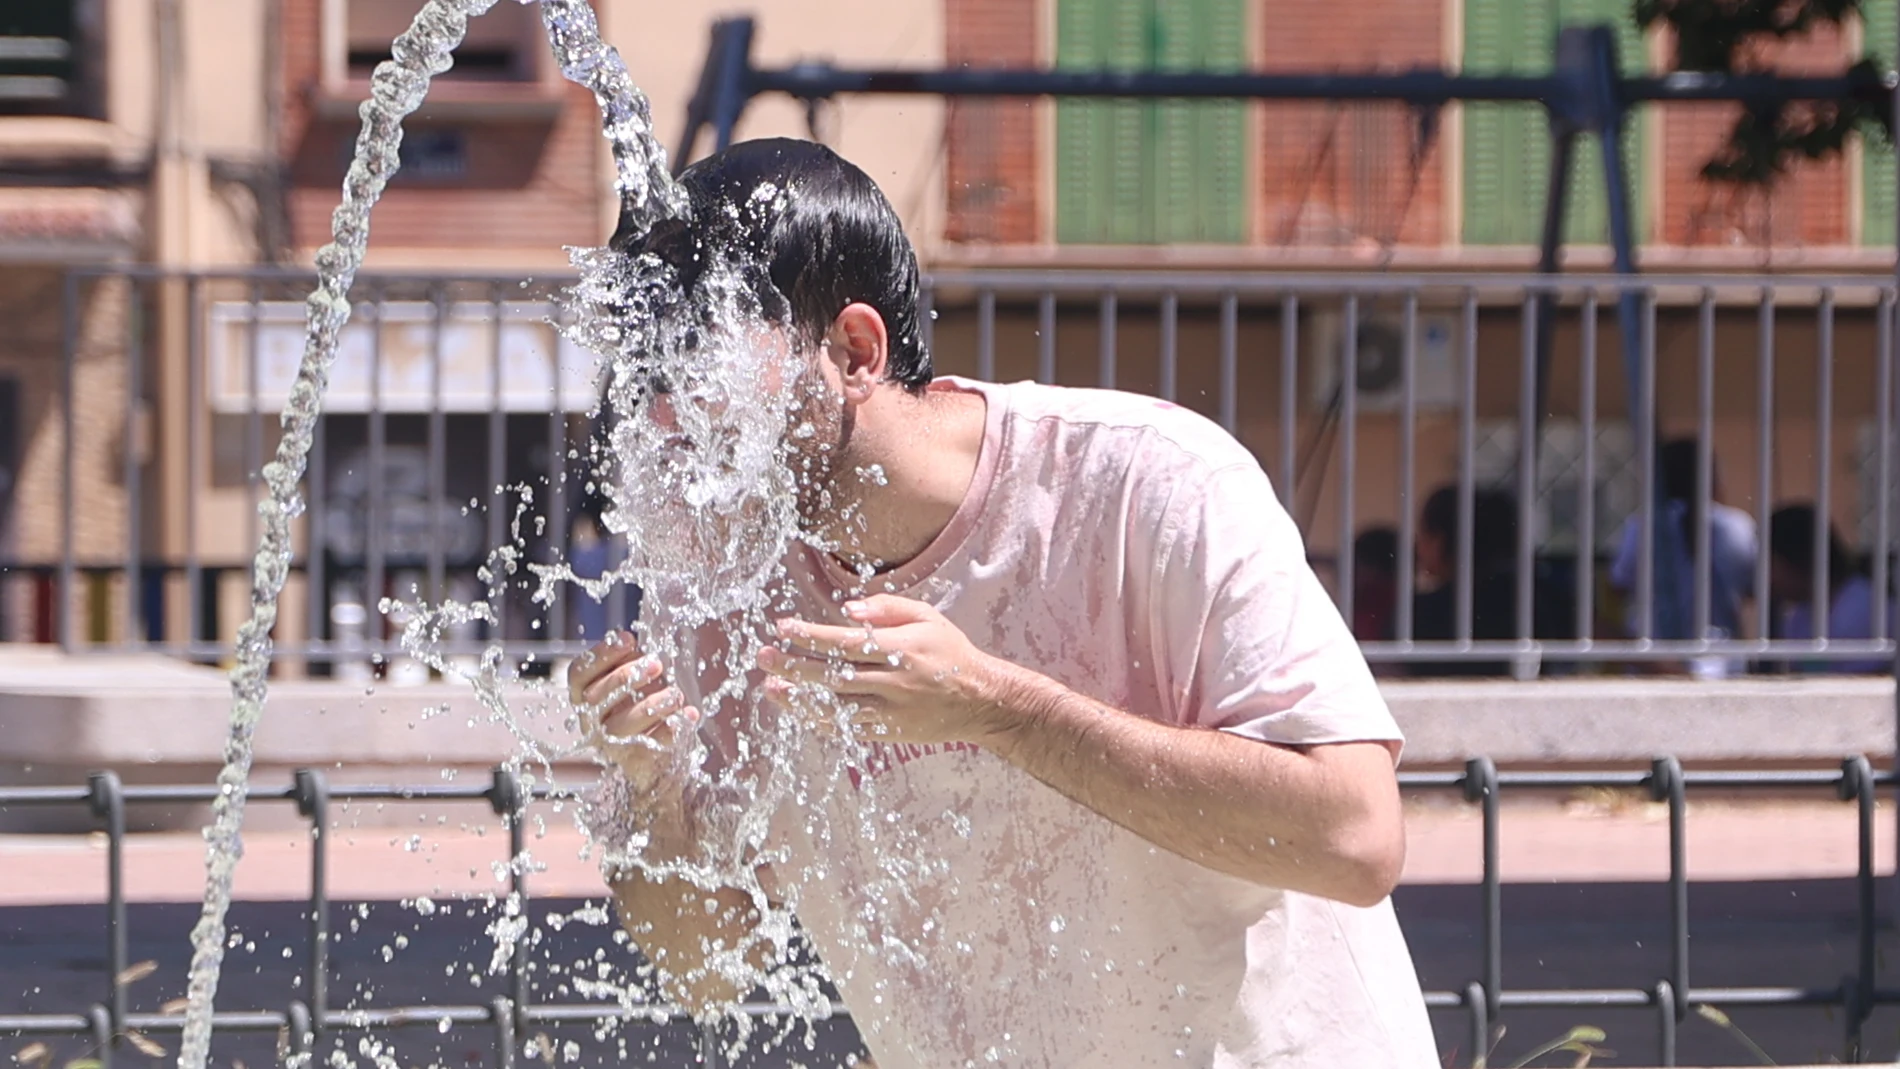 Un joven se refresca en una fuente durante una ola de calor